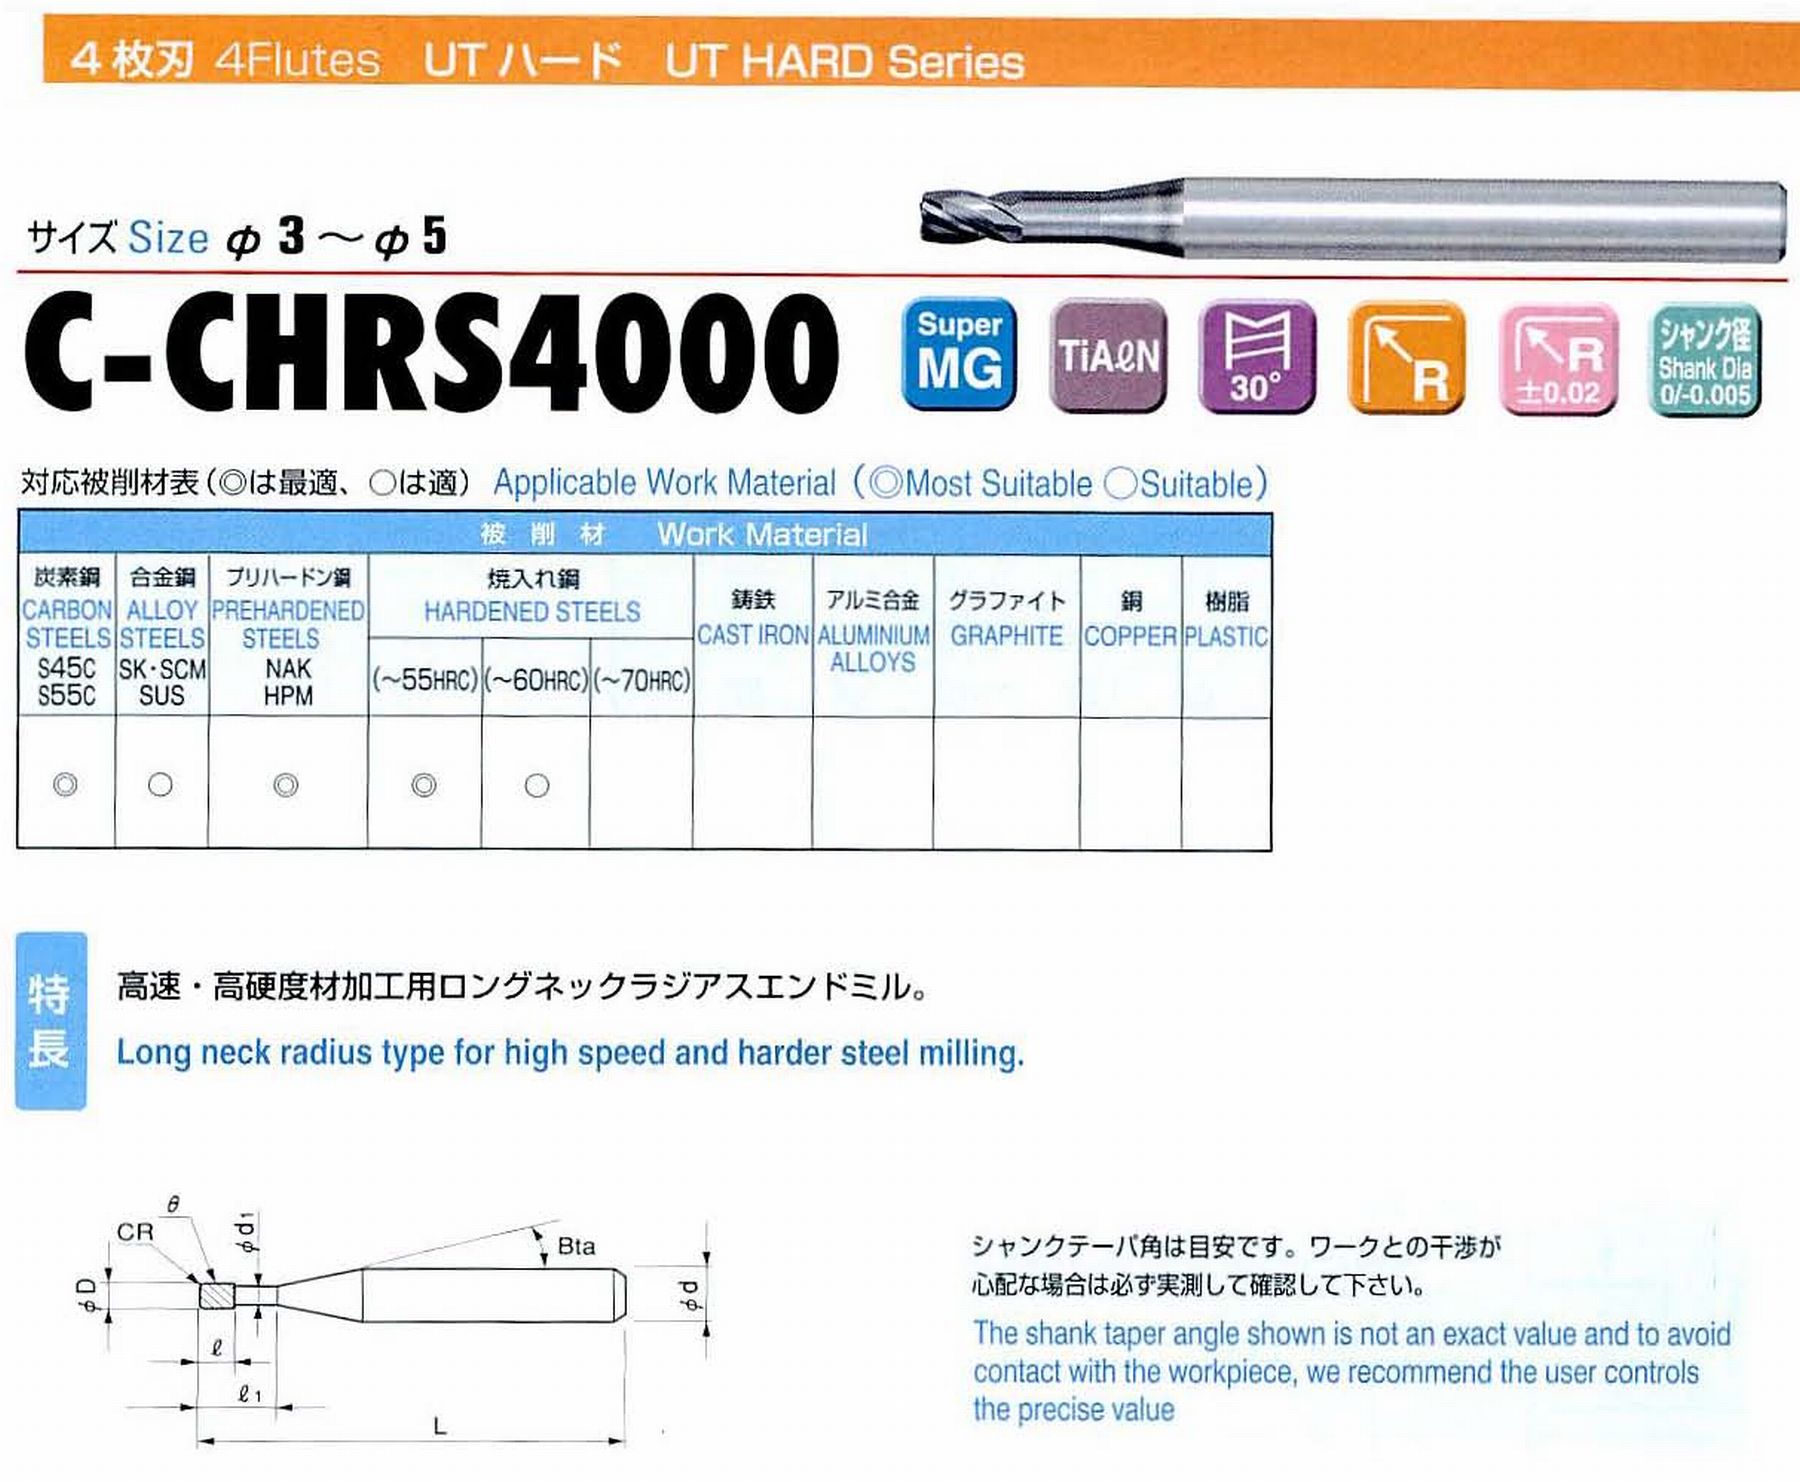 ユニオンツール 4枚刃 C-CHRS4030-01-100 外径3 コーナ半径R0.1 有効長10 刃長3 首径2.91 シャンクテーパ角11° 全長60 シャンク径6